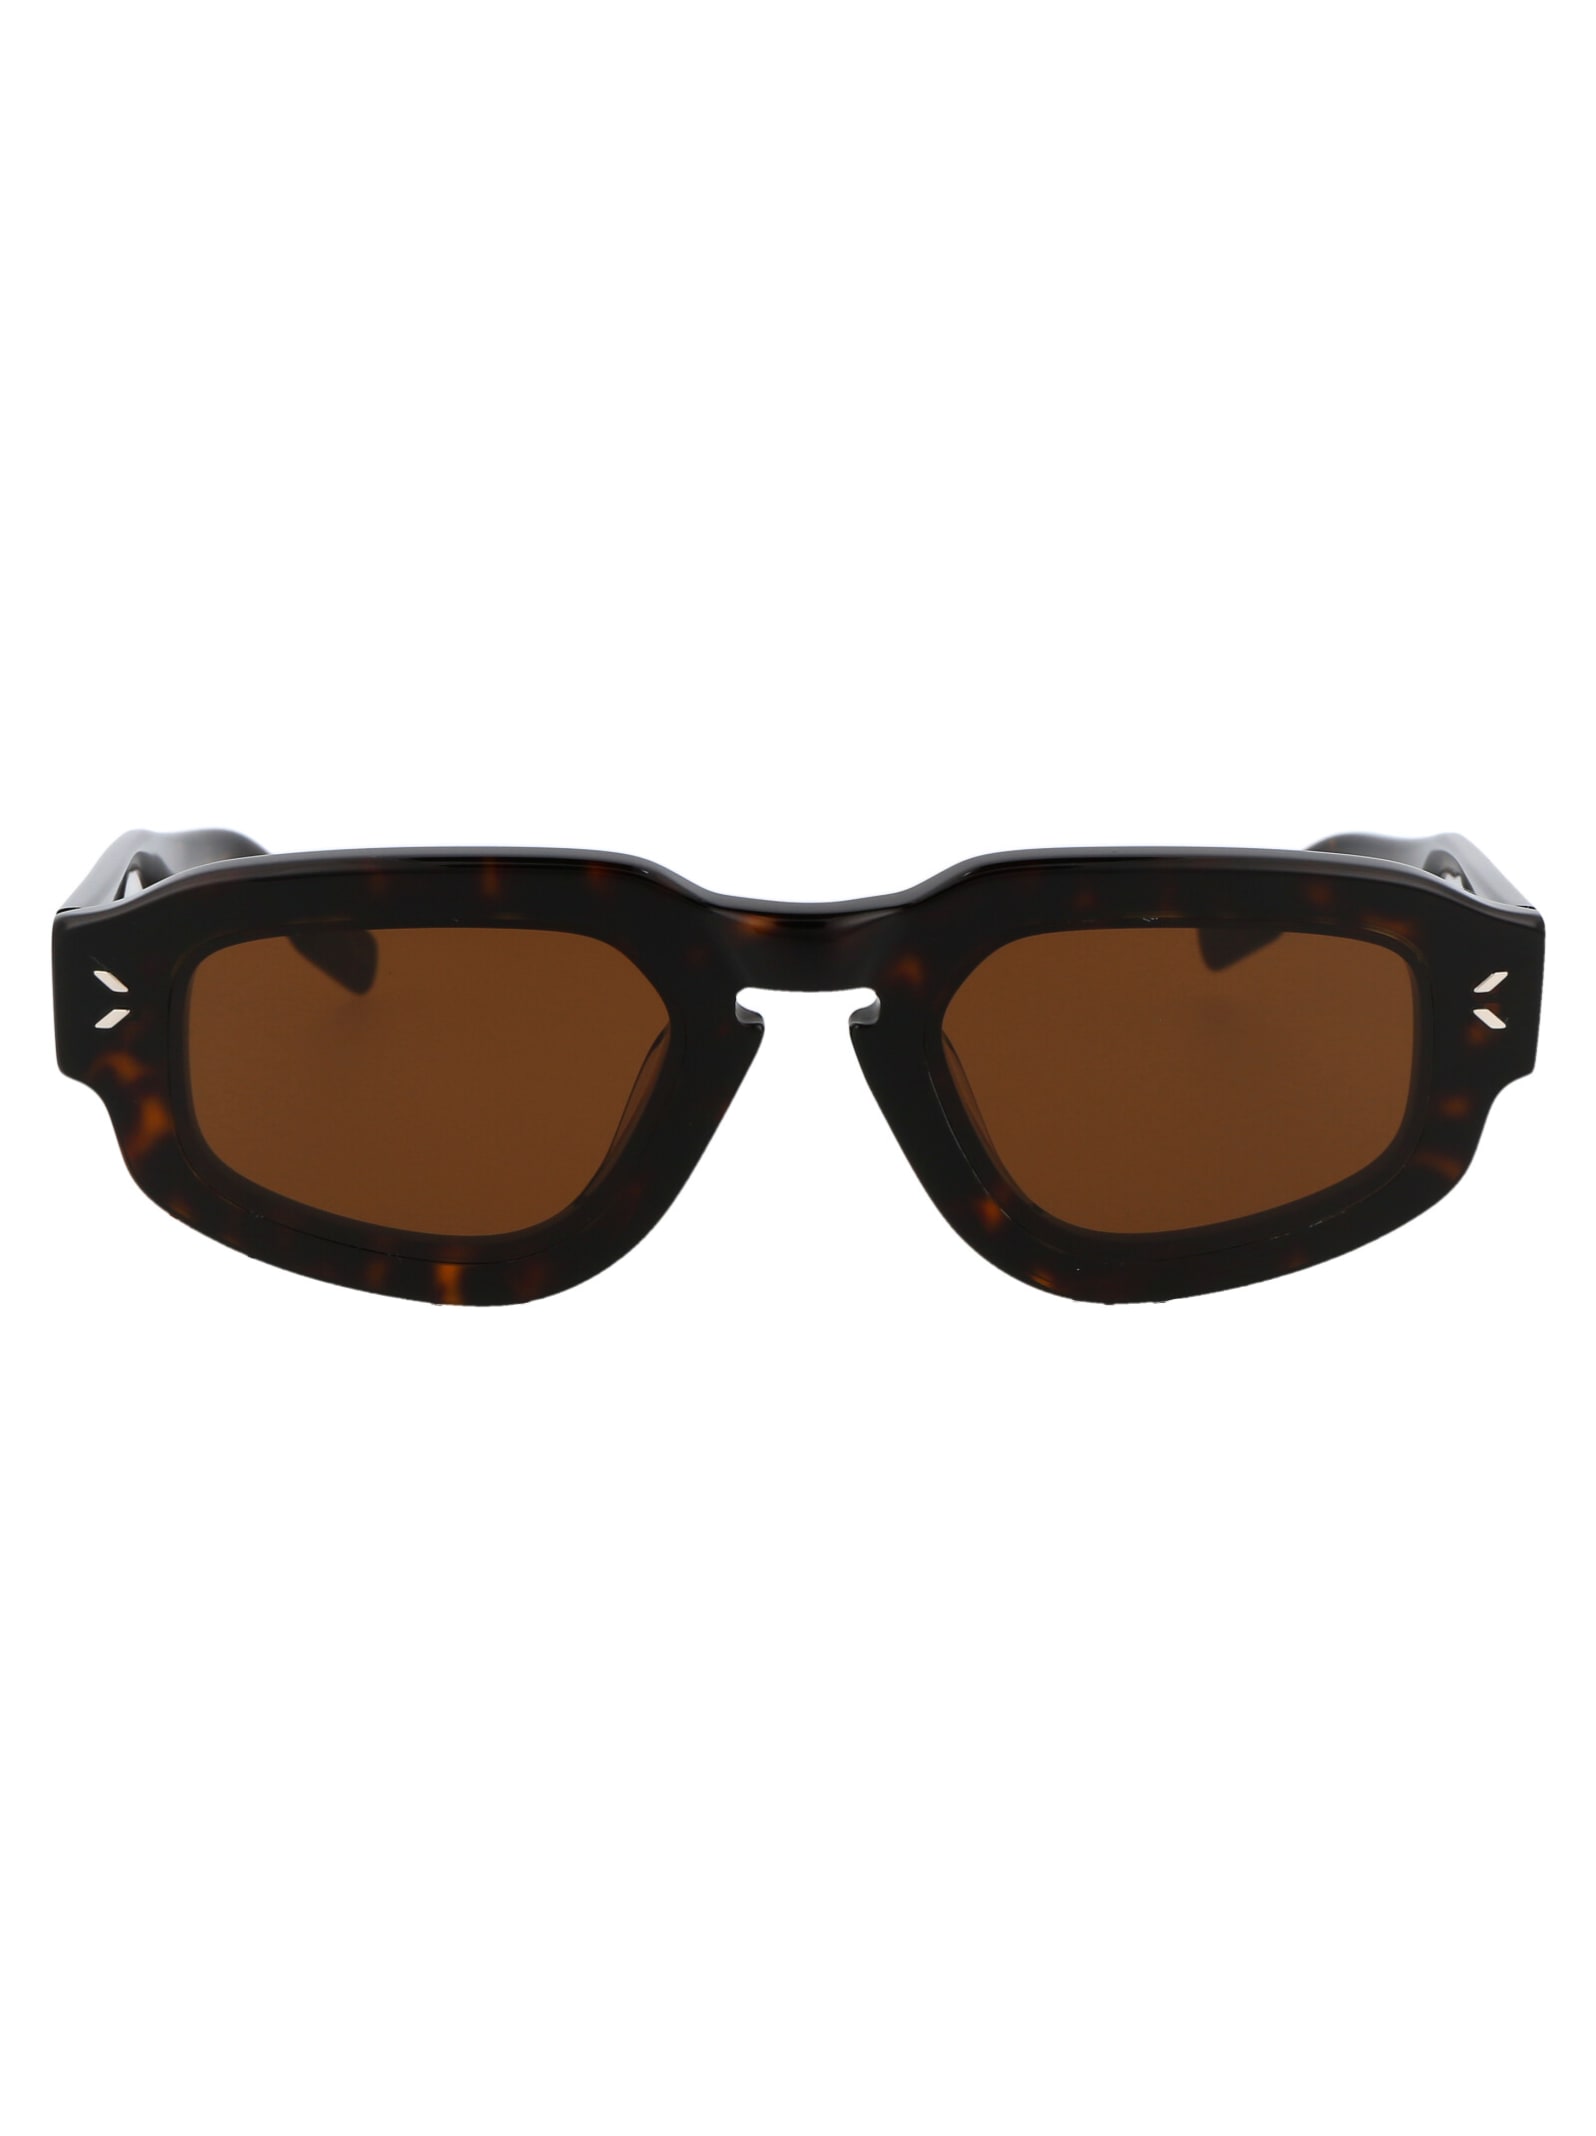 McQ Alexander McQueen Mq0342s Sunglasses